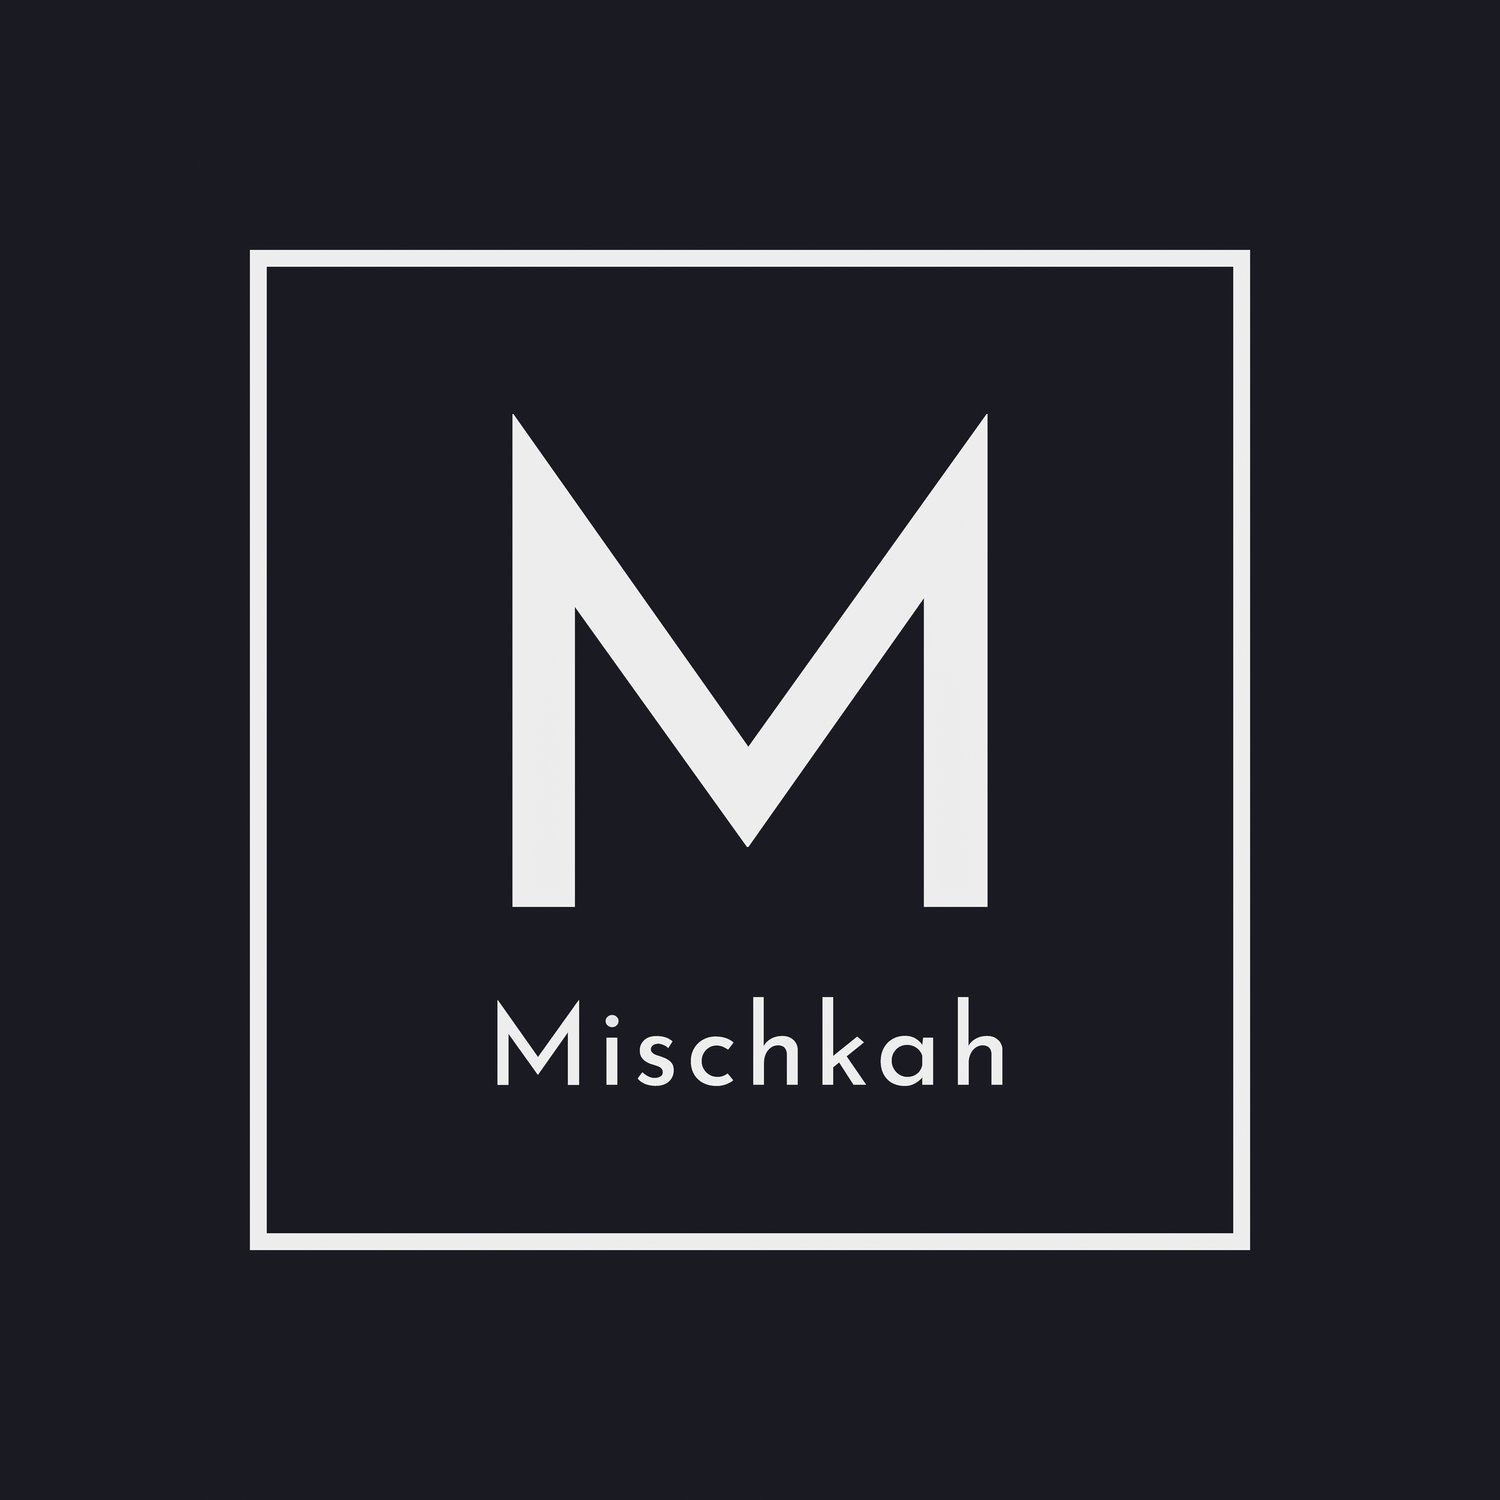 Mischkah